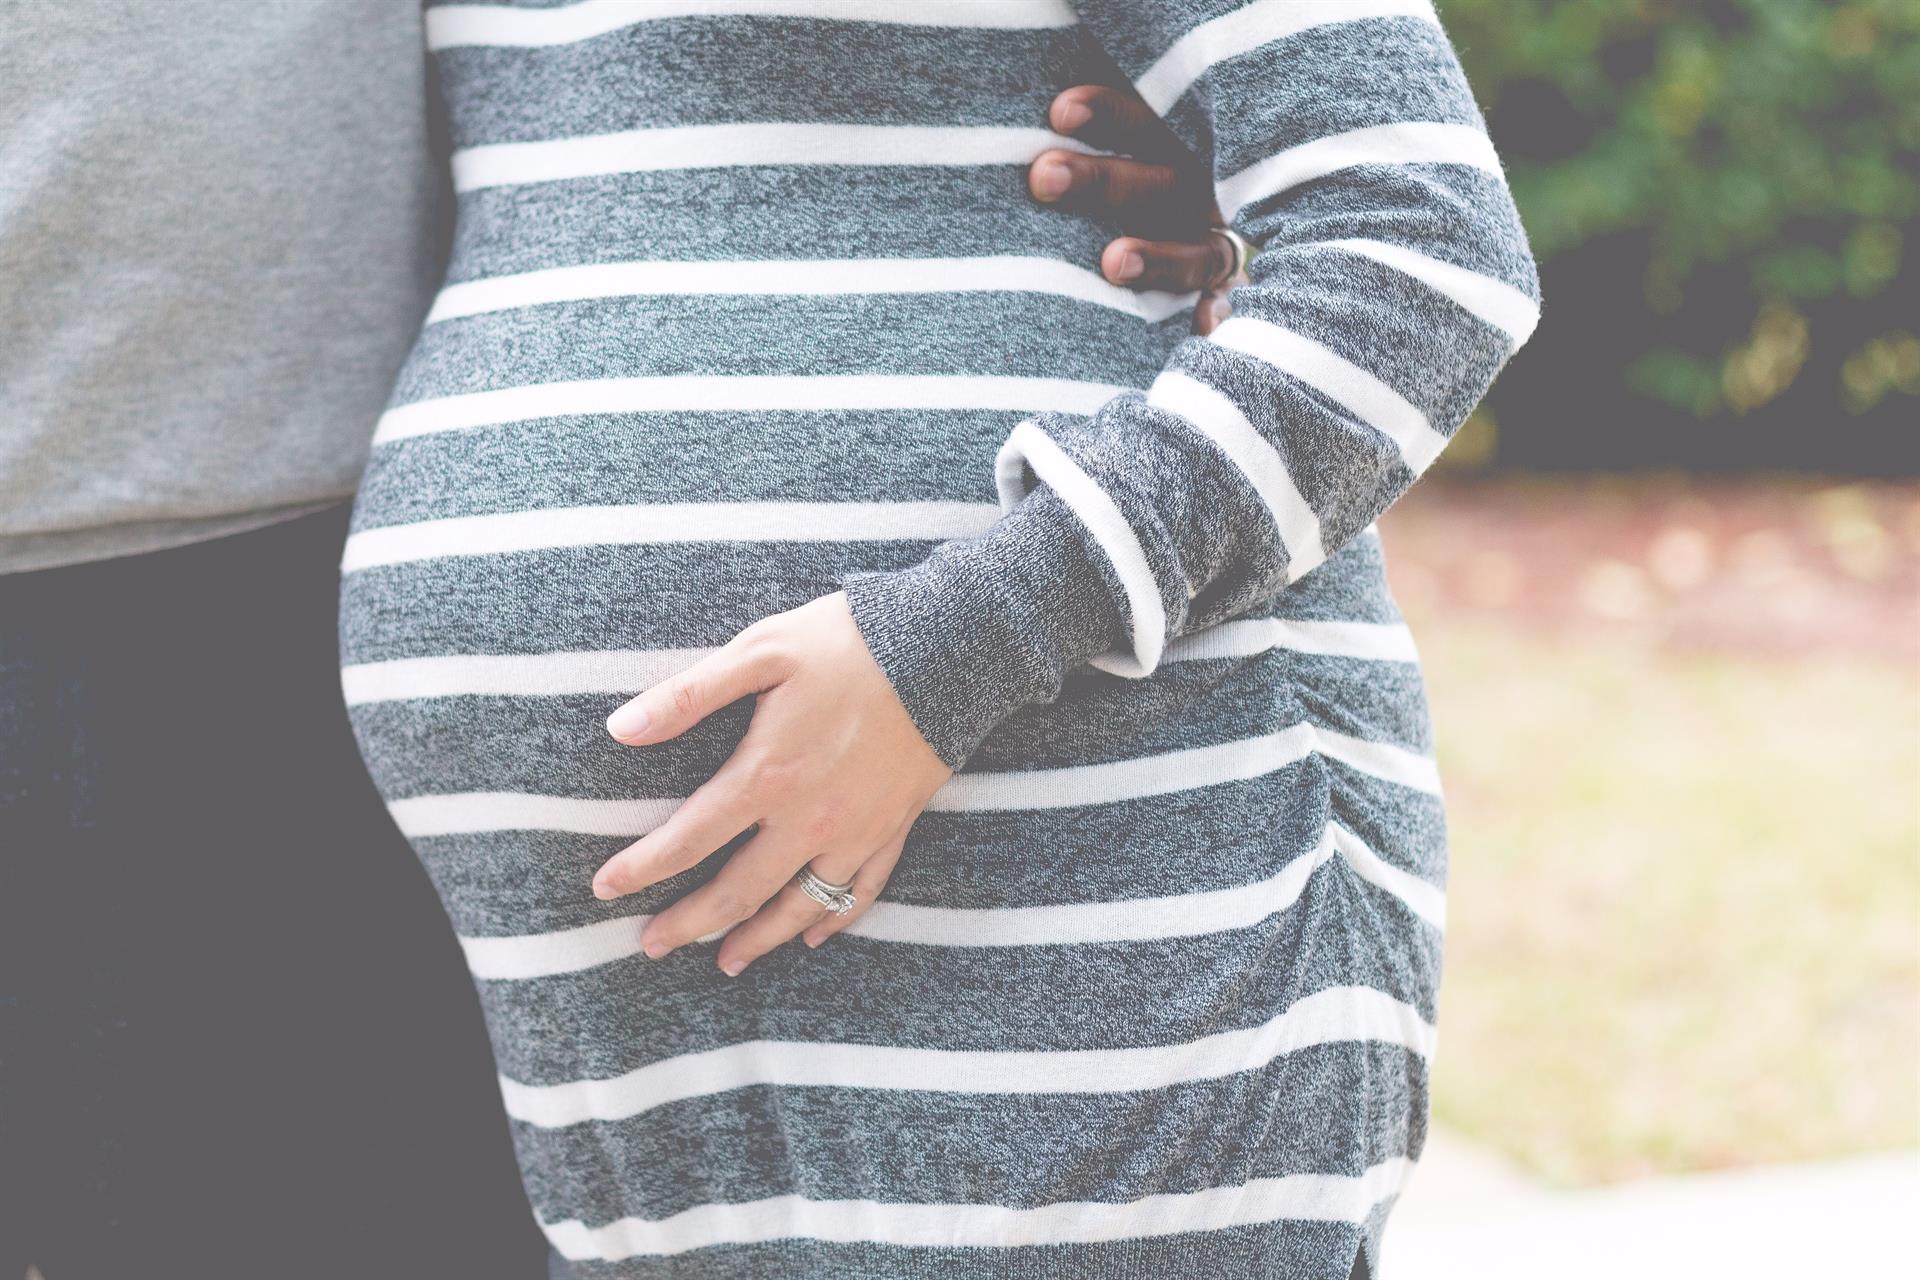 Classifica gravidanze precoci in Italia, la Campania si classifica seconda